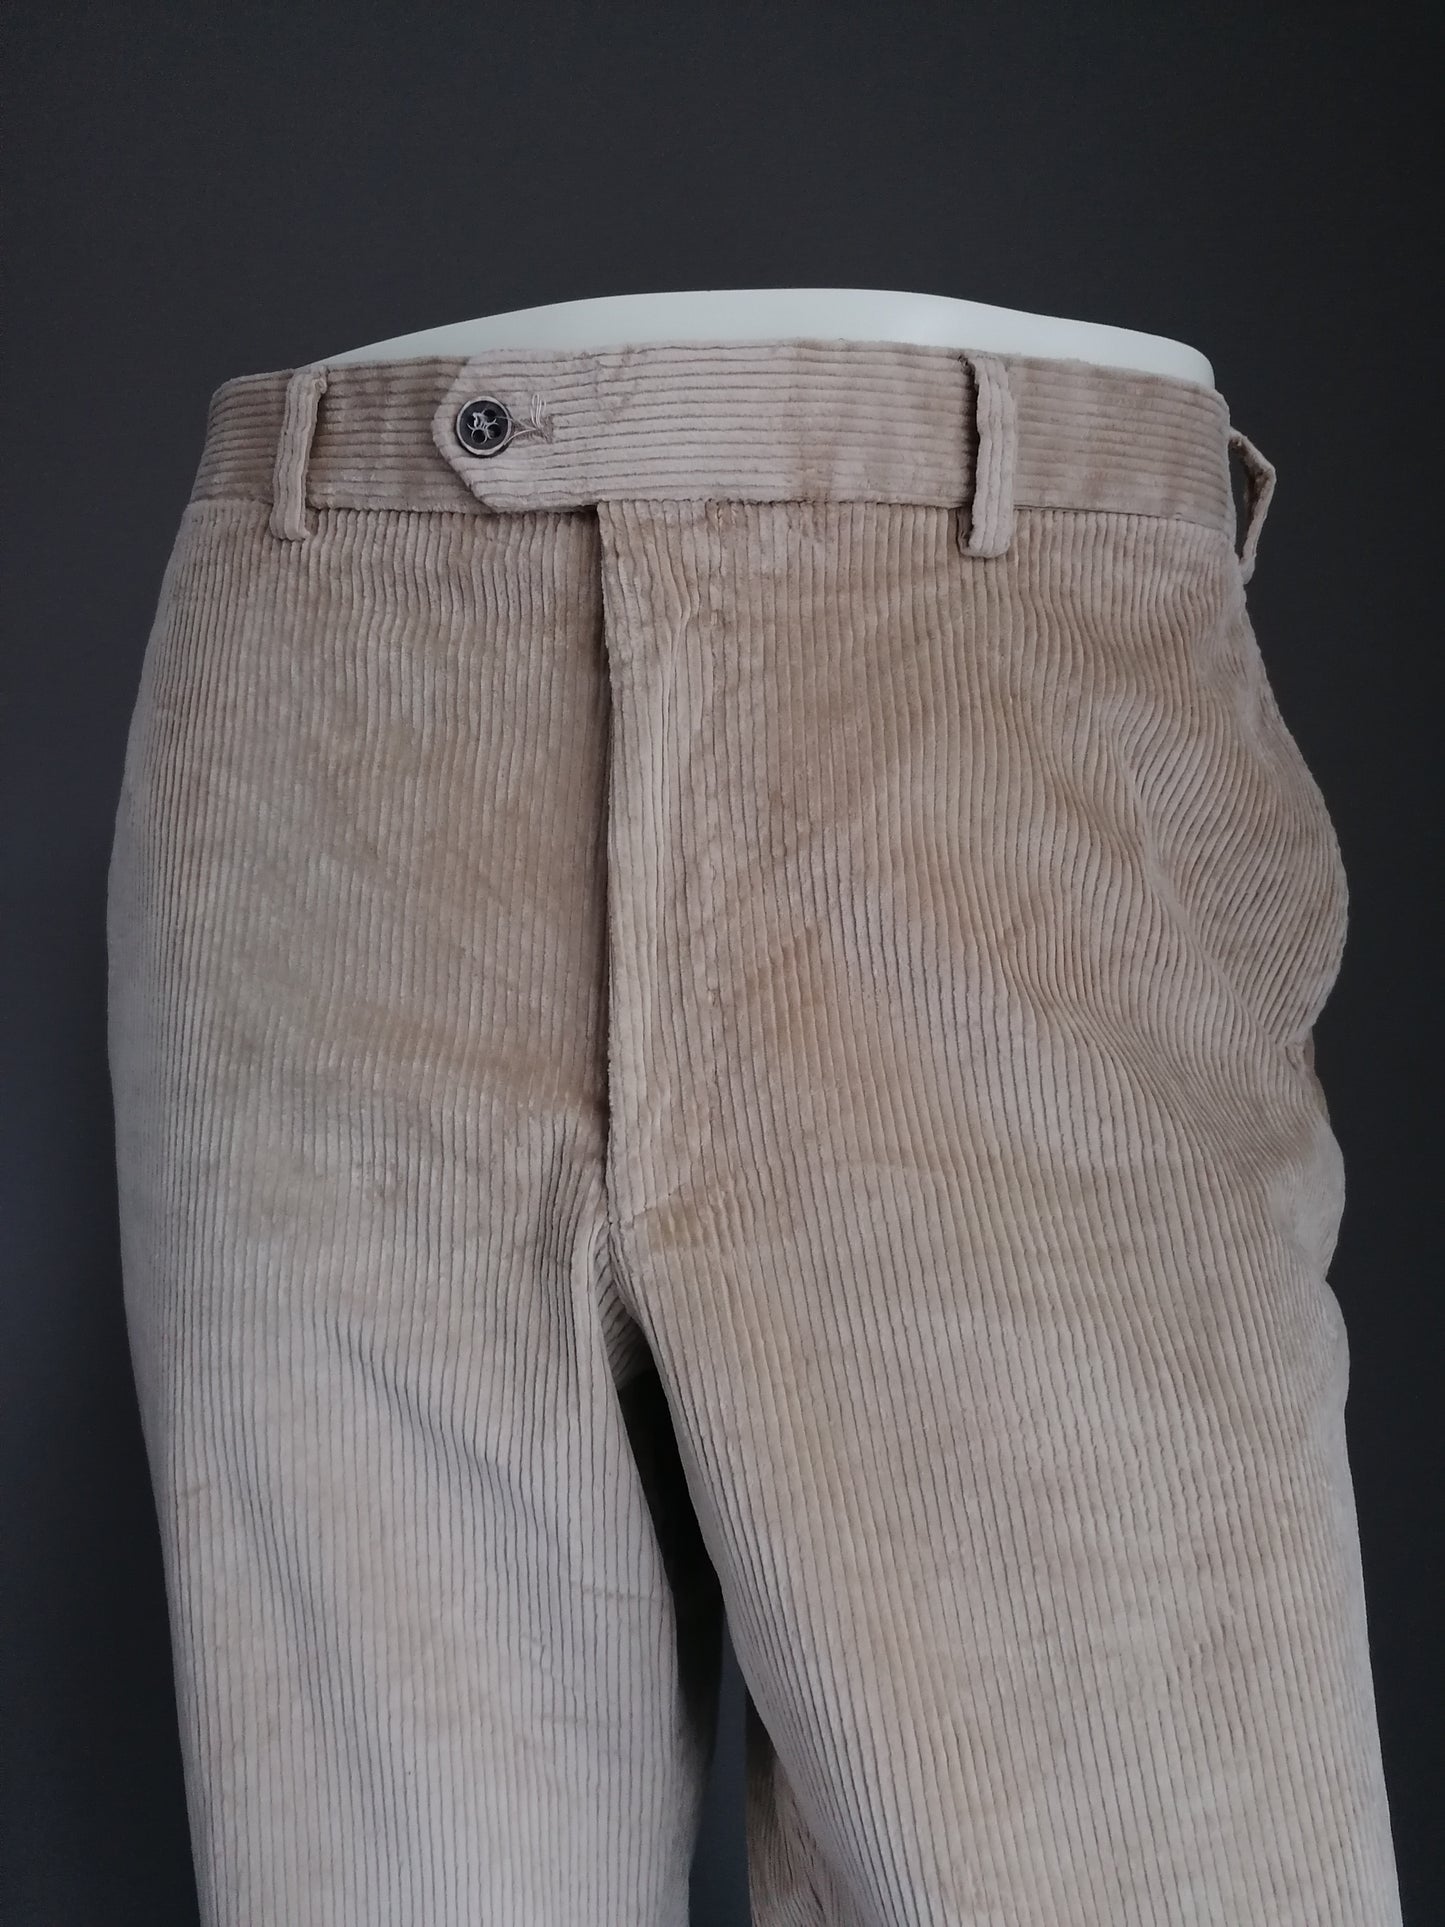 Pantaloni / pantaloni a costine Hiltl. Colorato marrone chiaro. Dimensioni 54 / l